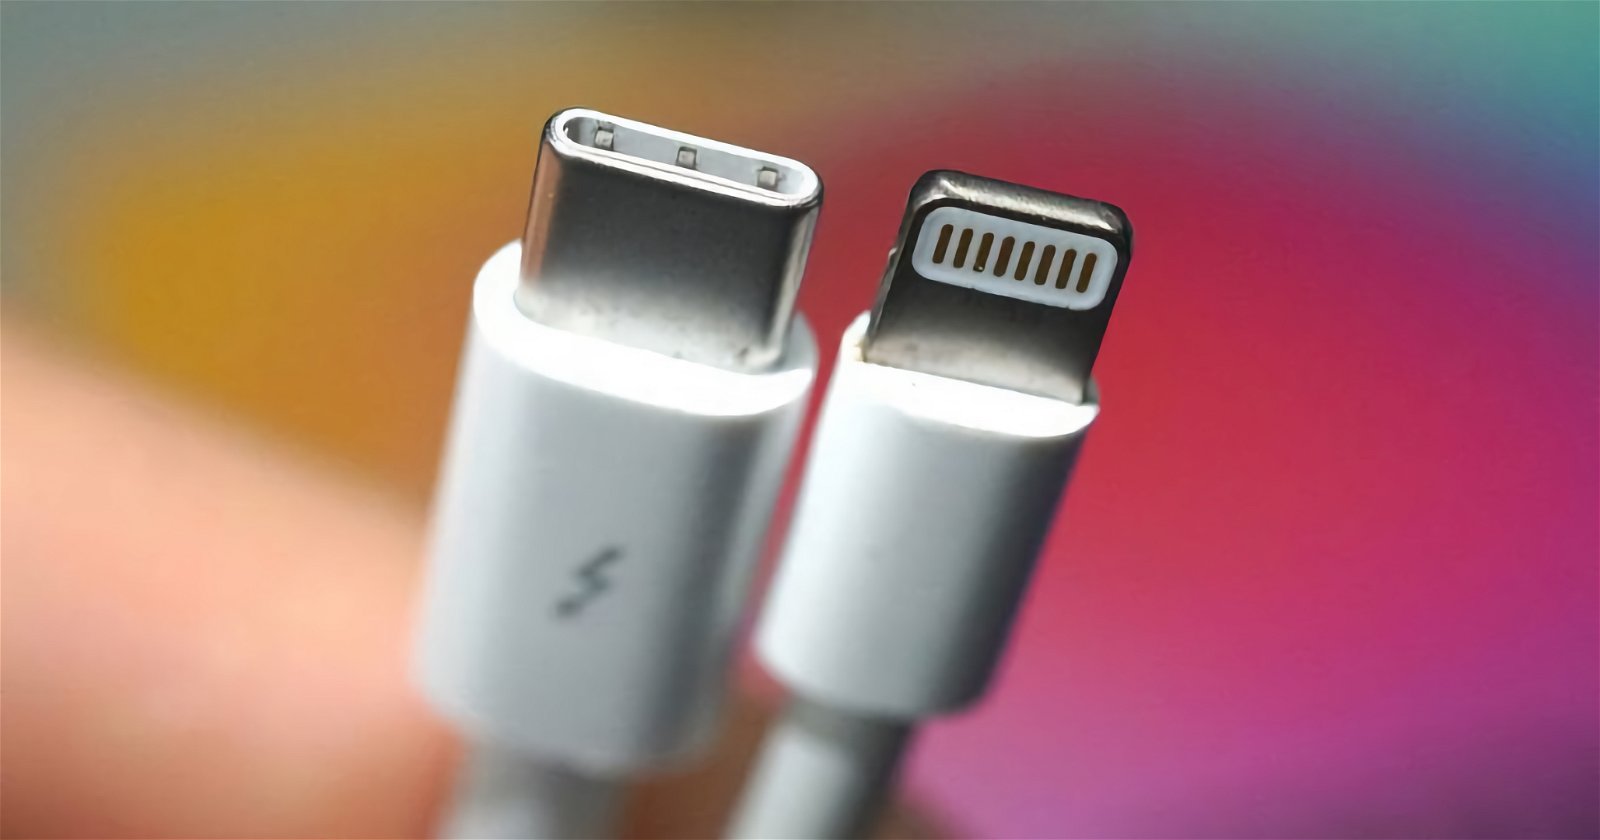 Apple confirma que el iPhone tendrá USB-C (aunque no están contentos)